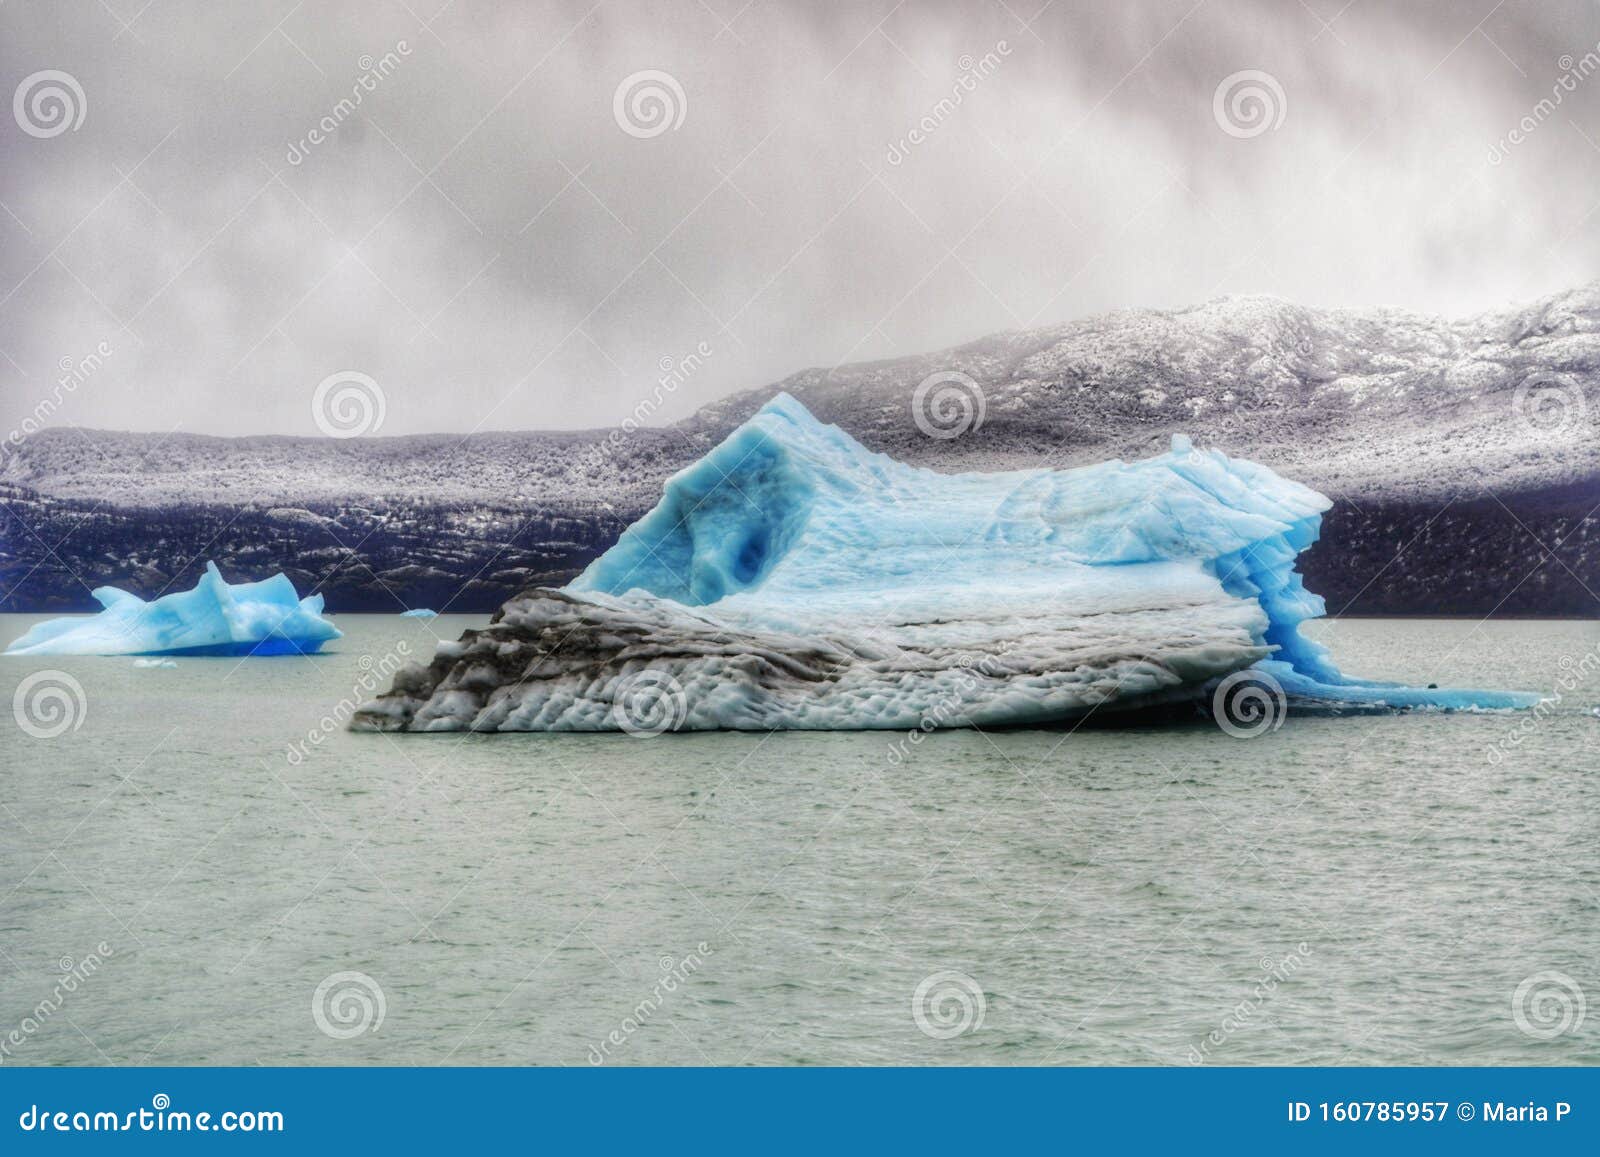 glaciar perito moreno calafate patagonia argentina invierno vacaciones scenic iceberg frozen lake snowy mountains outdoors